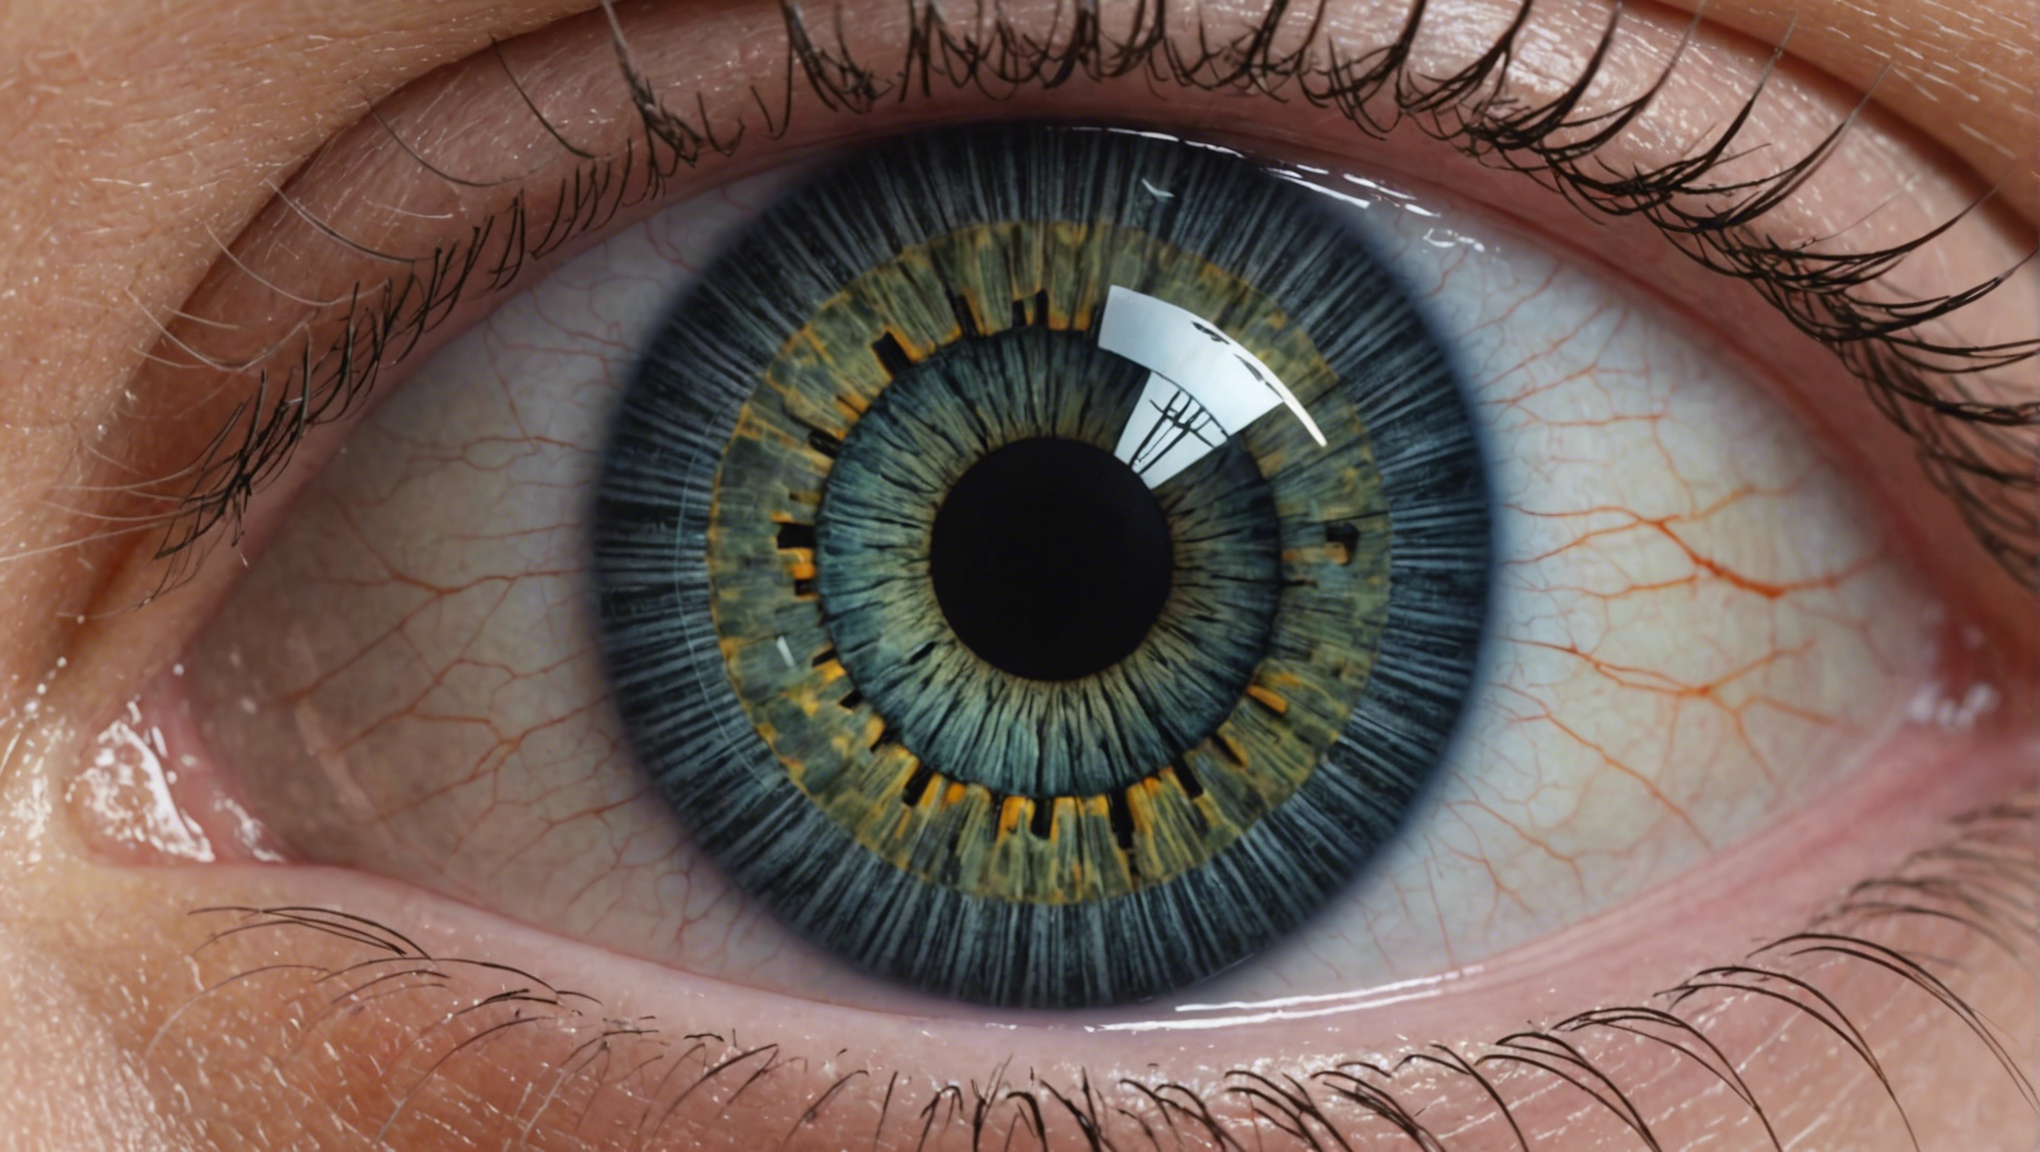 découvrez comment la chirurgie de la cataracte peut transformer votre vision grâce à cette intervention sécurisée et efficace. améliorez votre qualité de vie et profitez pleinement de chaque instant avec une vision nette et claire.